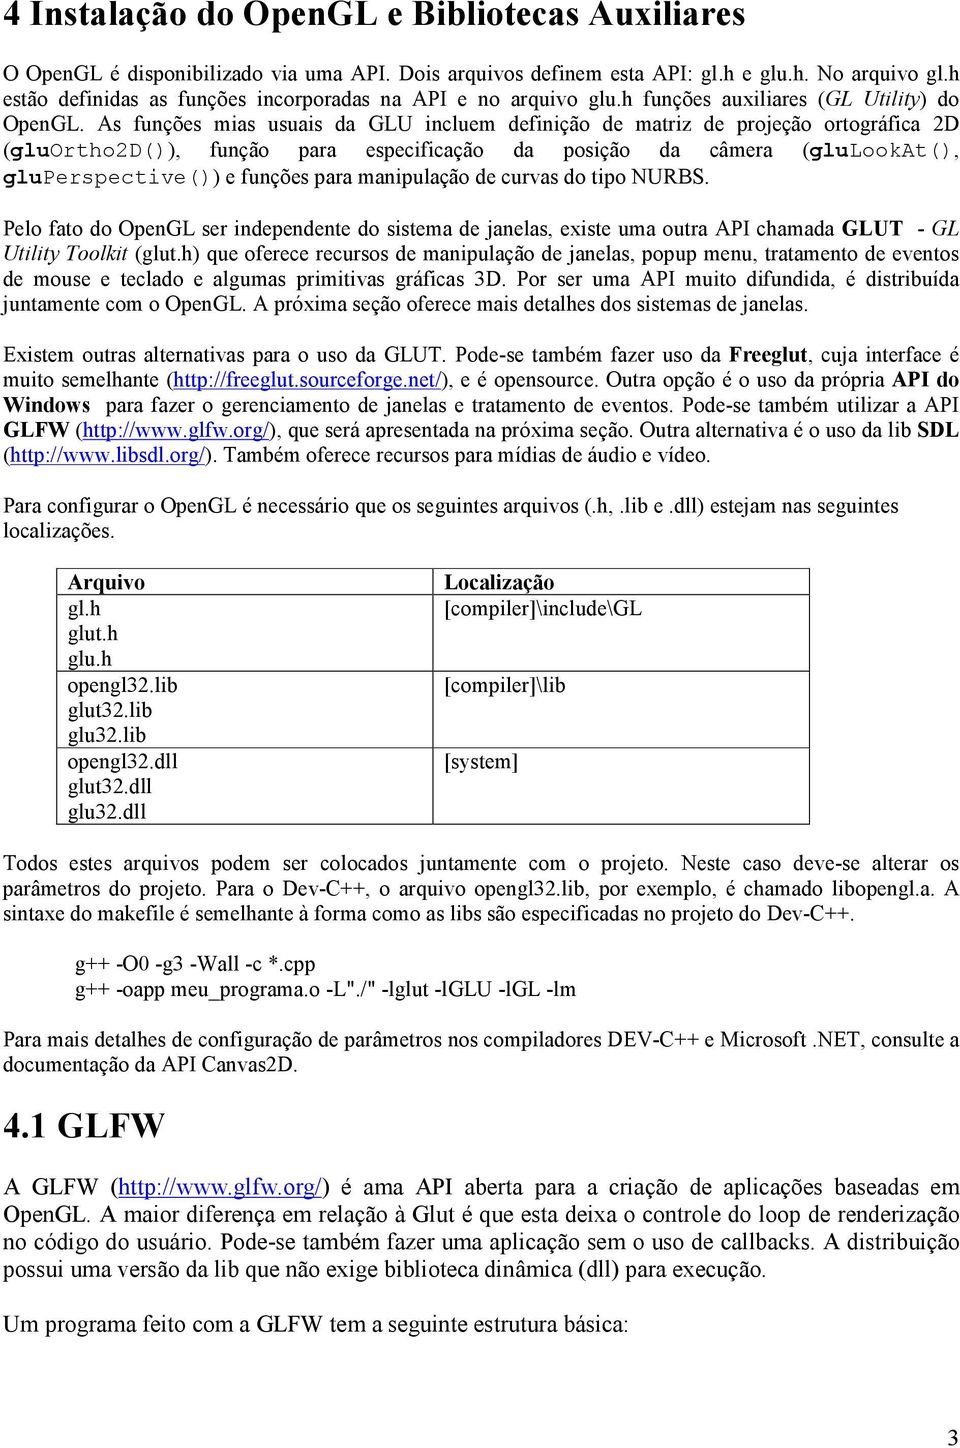 As funções mias usuais da GLU incluem definição de matriz de projeção ortográfica 2D (gluortho2d()), função para especificação da posição da câmera (glulookat(), gluperspective()) e funções para